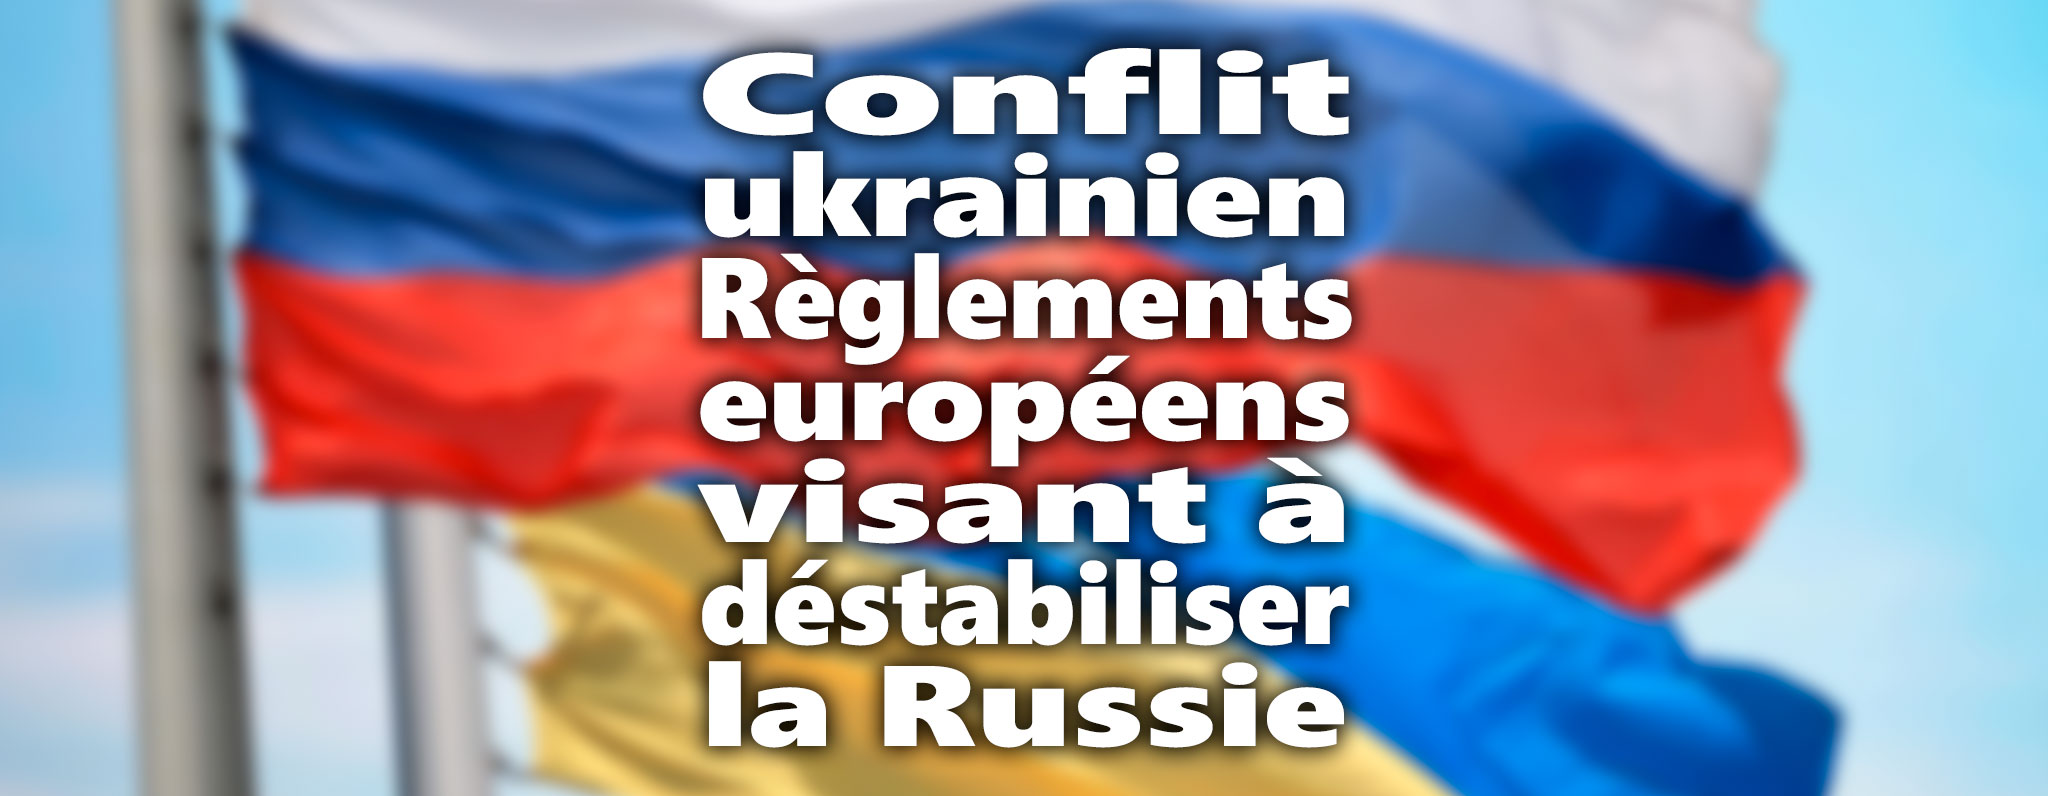 Règlements européens visant à déstabiliser la Russie dans la situation ukrainienne